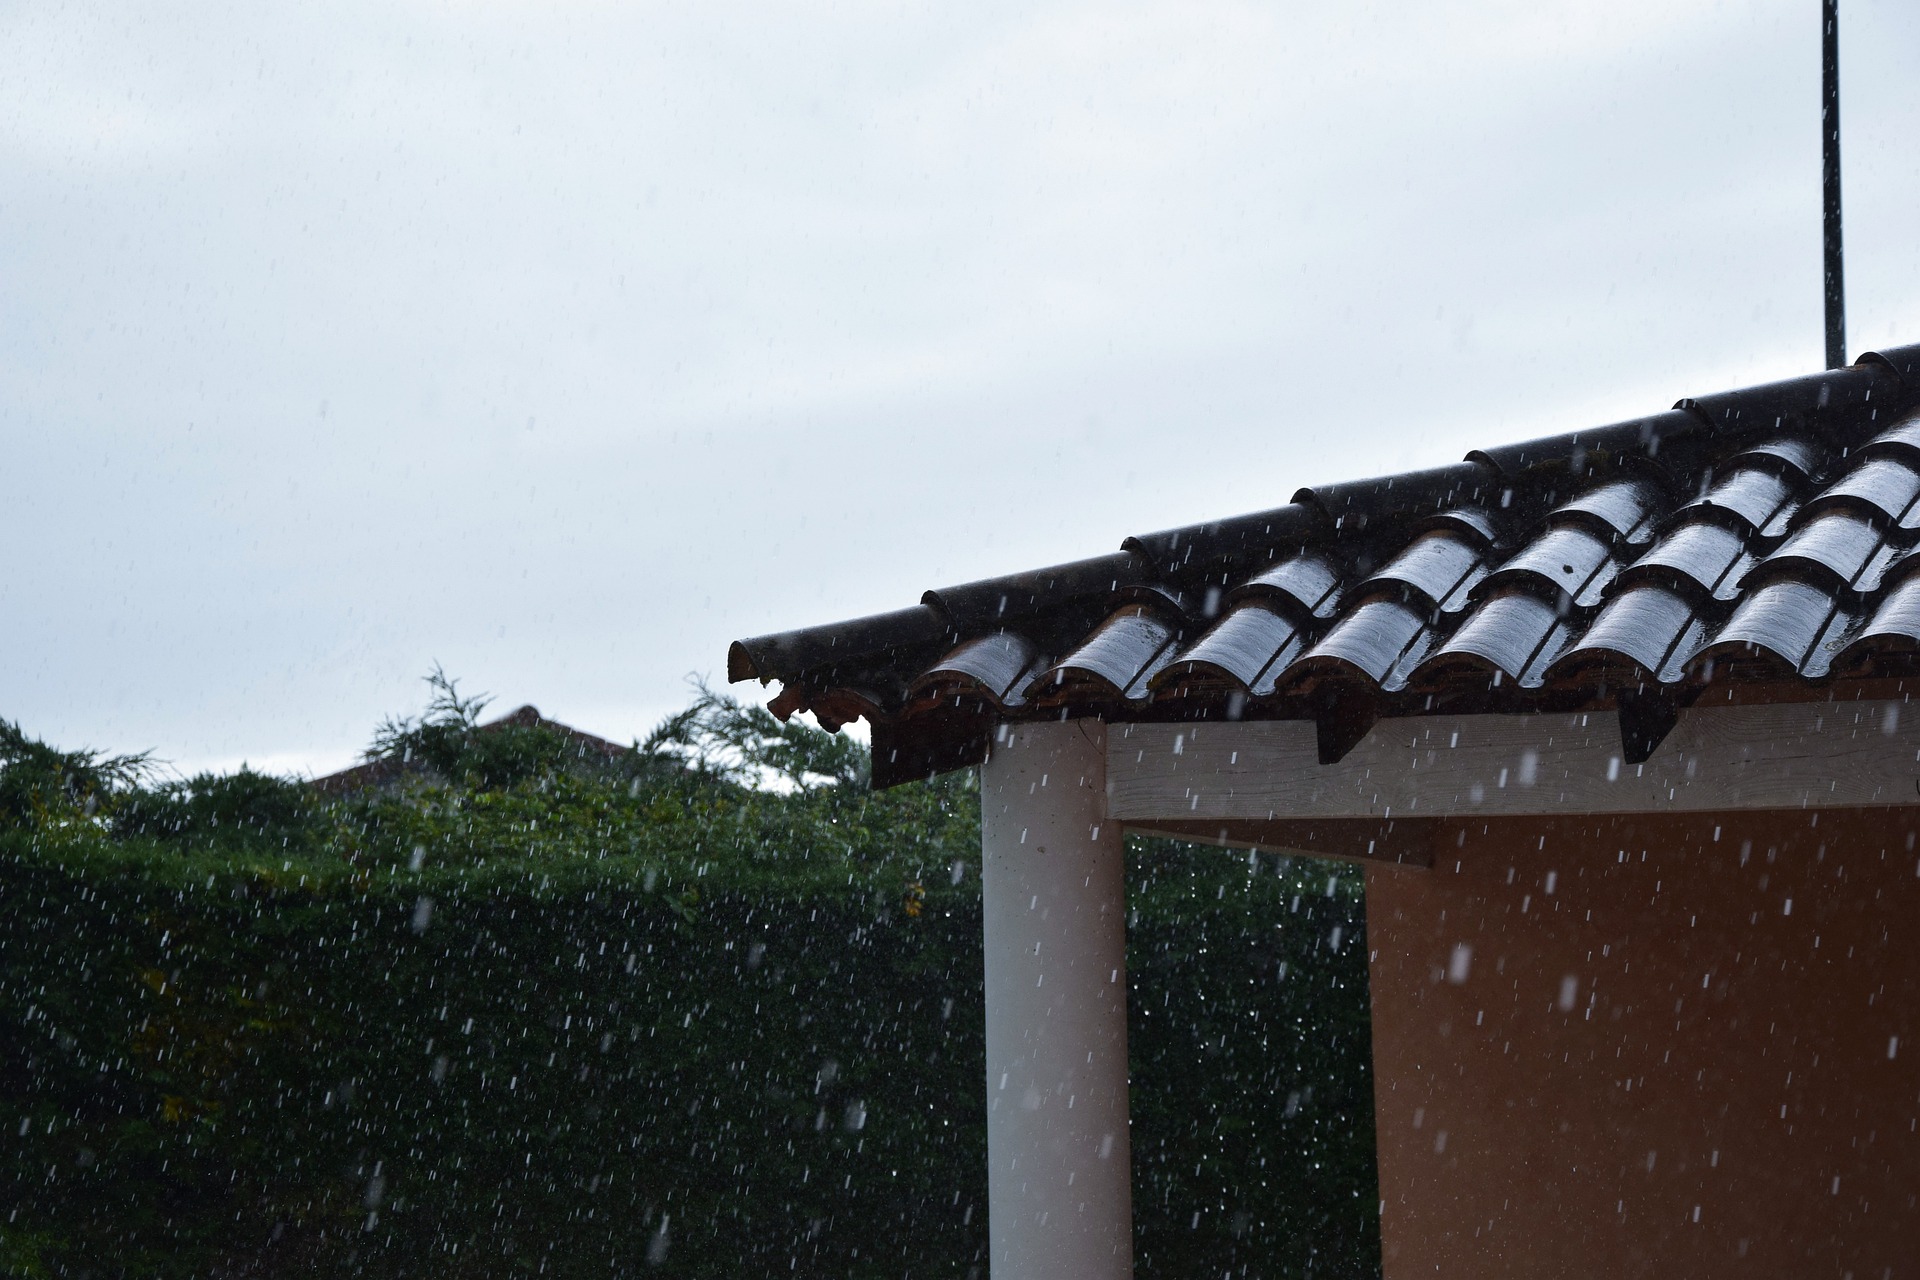 Kosze dachowe: kluczowy element odprowadzania wody z dachu